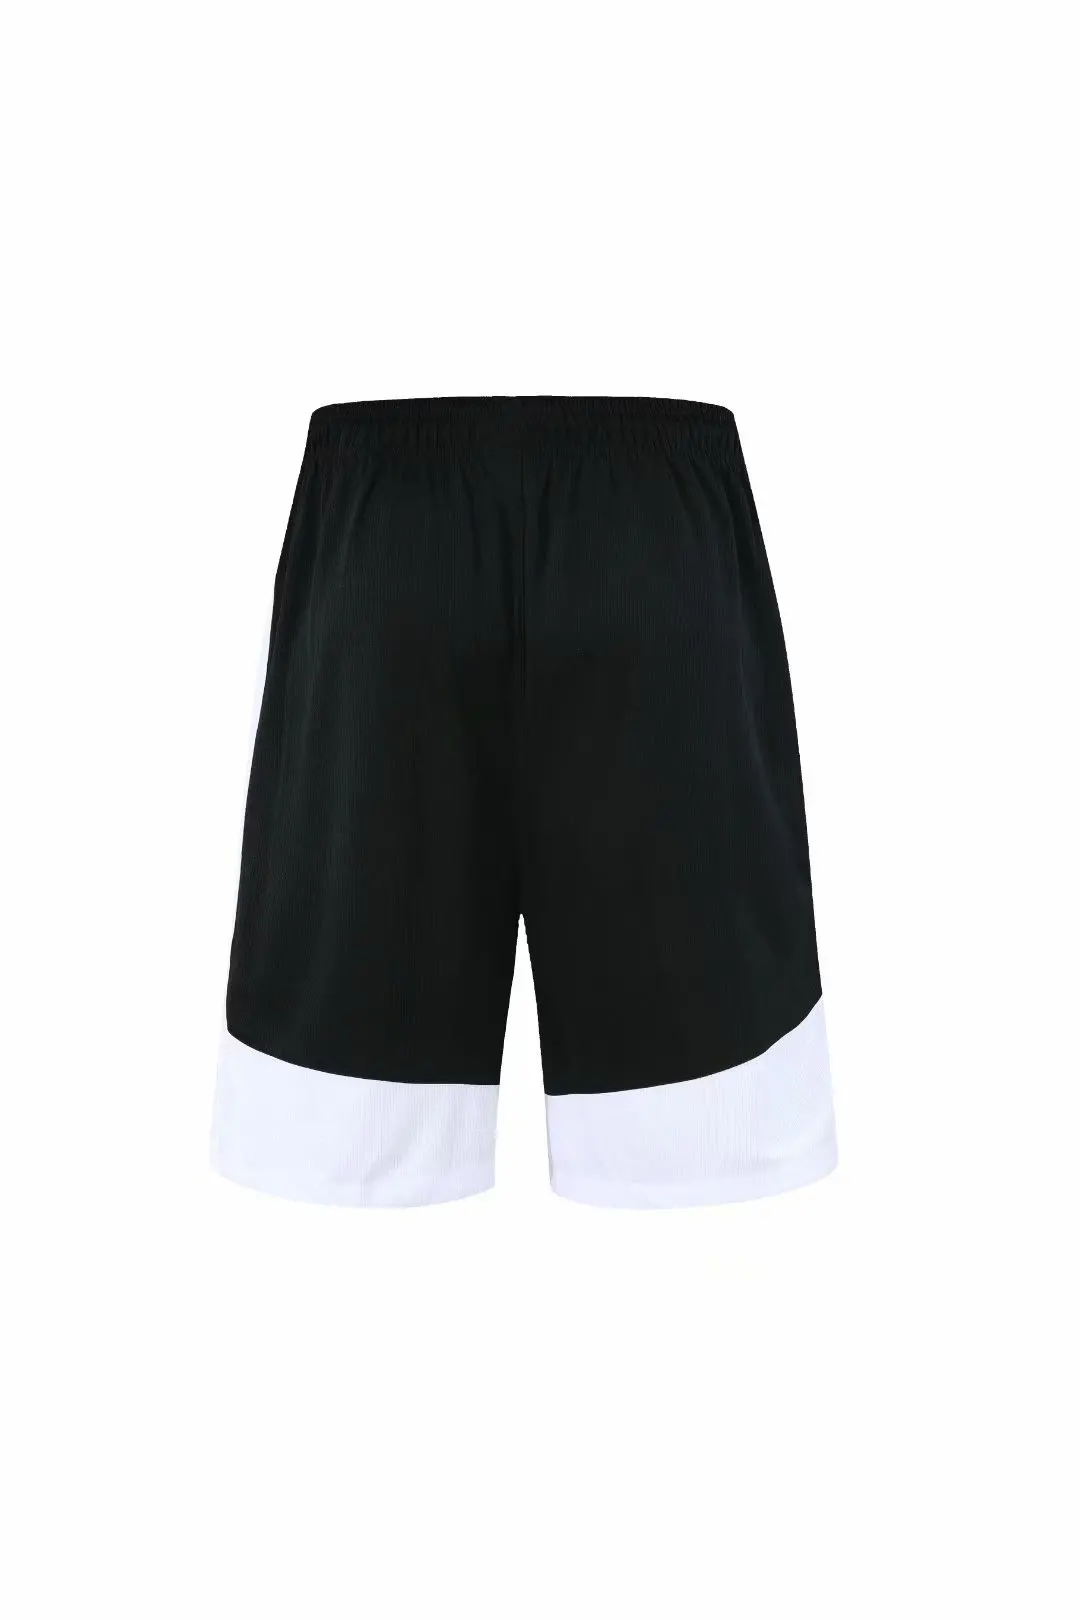 Баскетбольные короткие мужские дышащие тренировочные плотные пляжные спортивные шорты мужские с карманом на молнии для бега фитнес быстросохнущие шорты набор